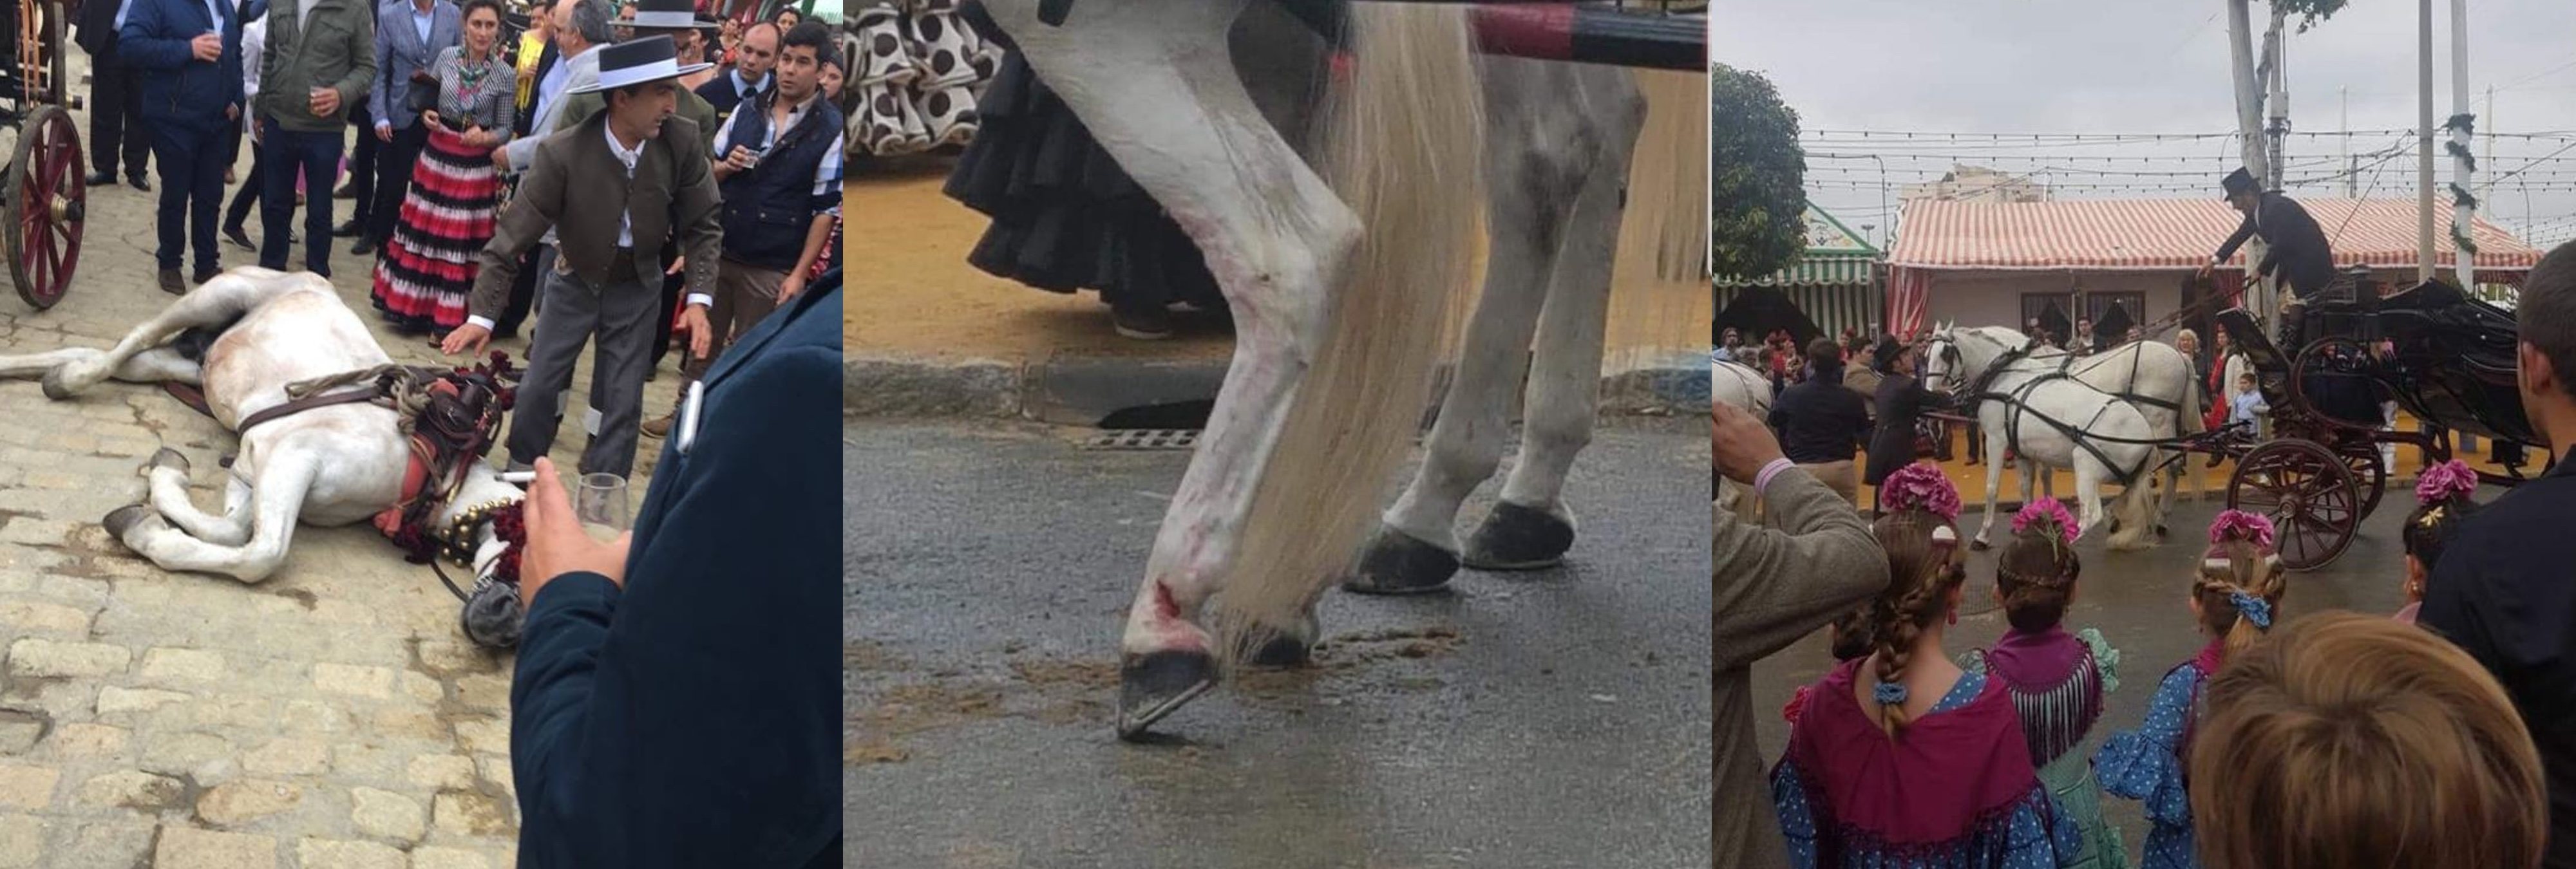 La Federación Andaluza de Defensa Animal denuncia el maltrato a caballos en la Feria de Abril